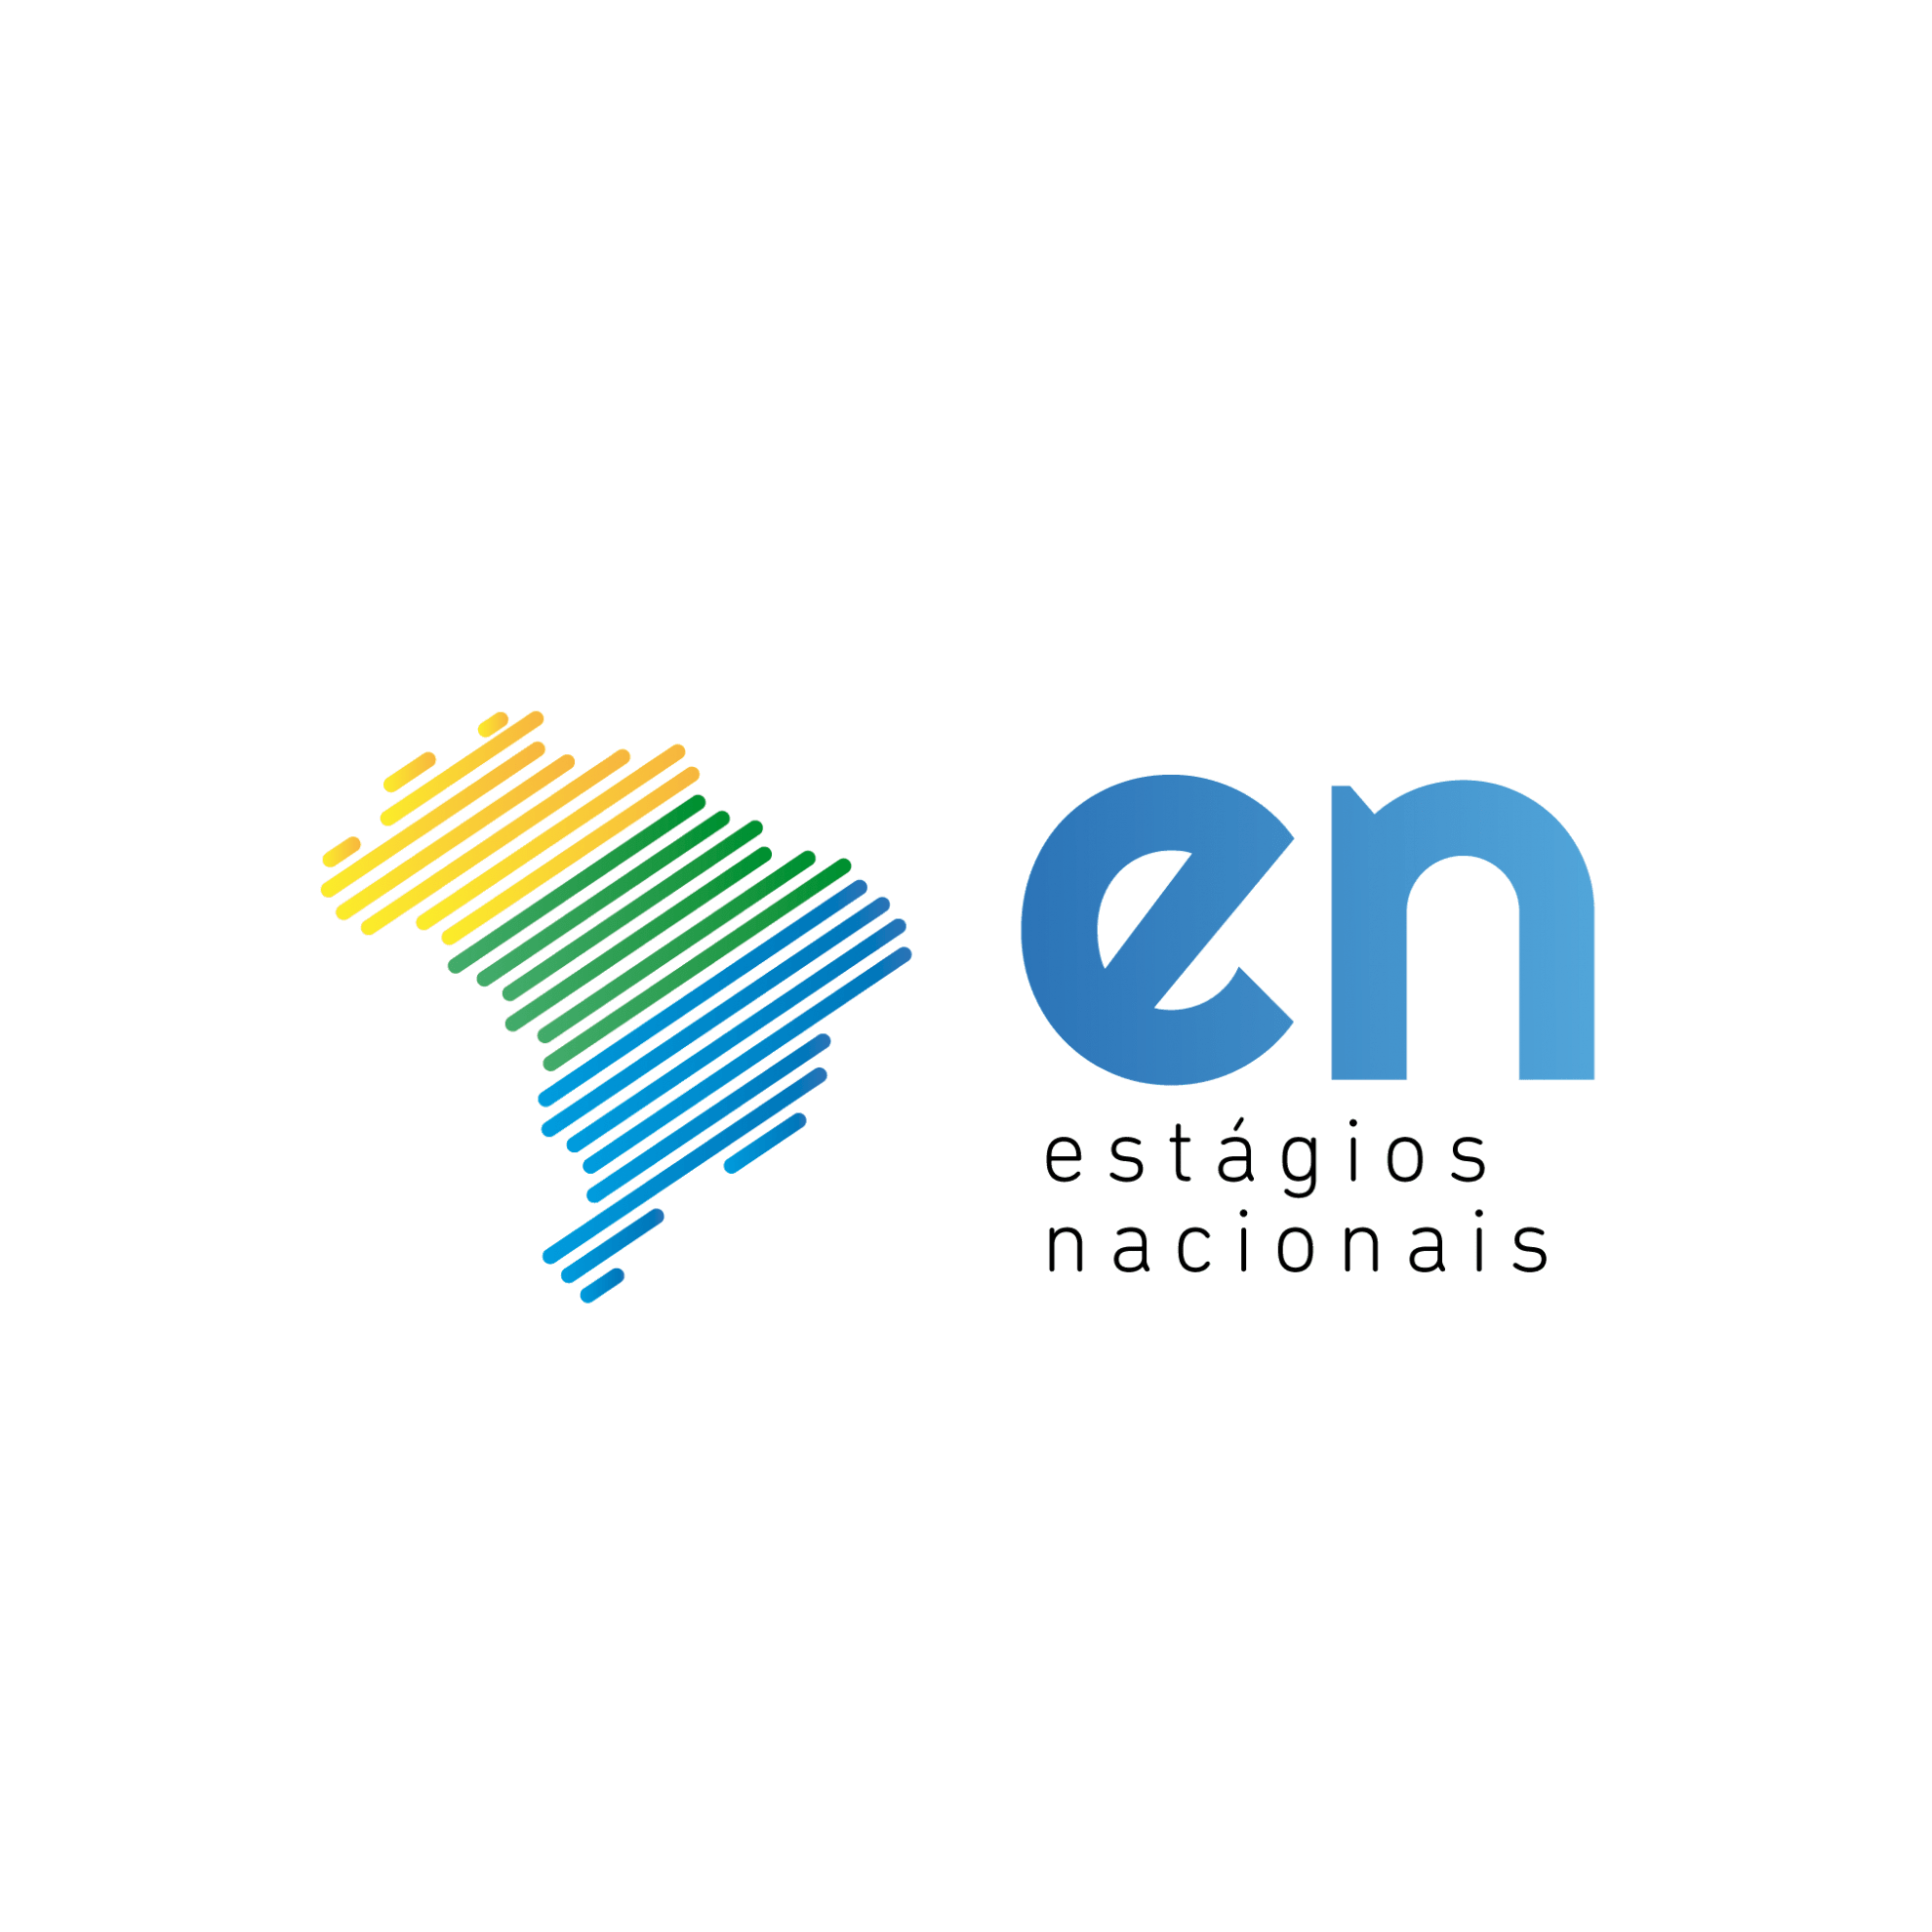 Hiperlink com a logo dos Estágios Nacionais, em que se lê “en - estágios nacionais”, que direciona para o edital de vagas dos estágios nacionais.